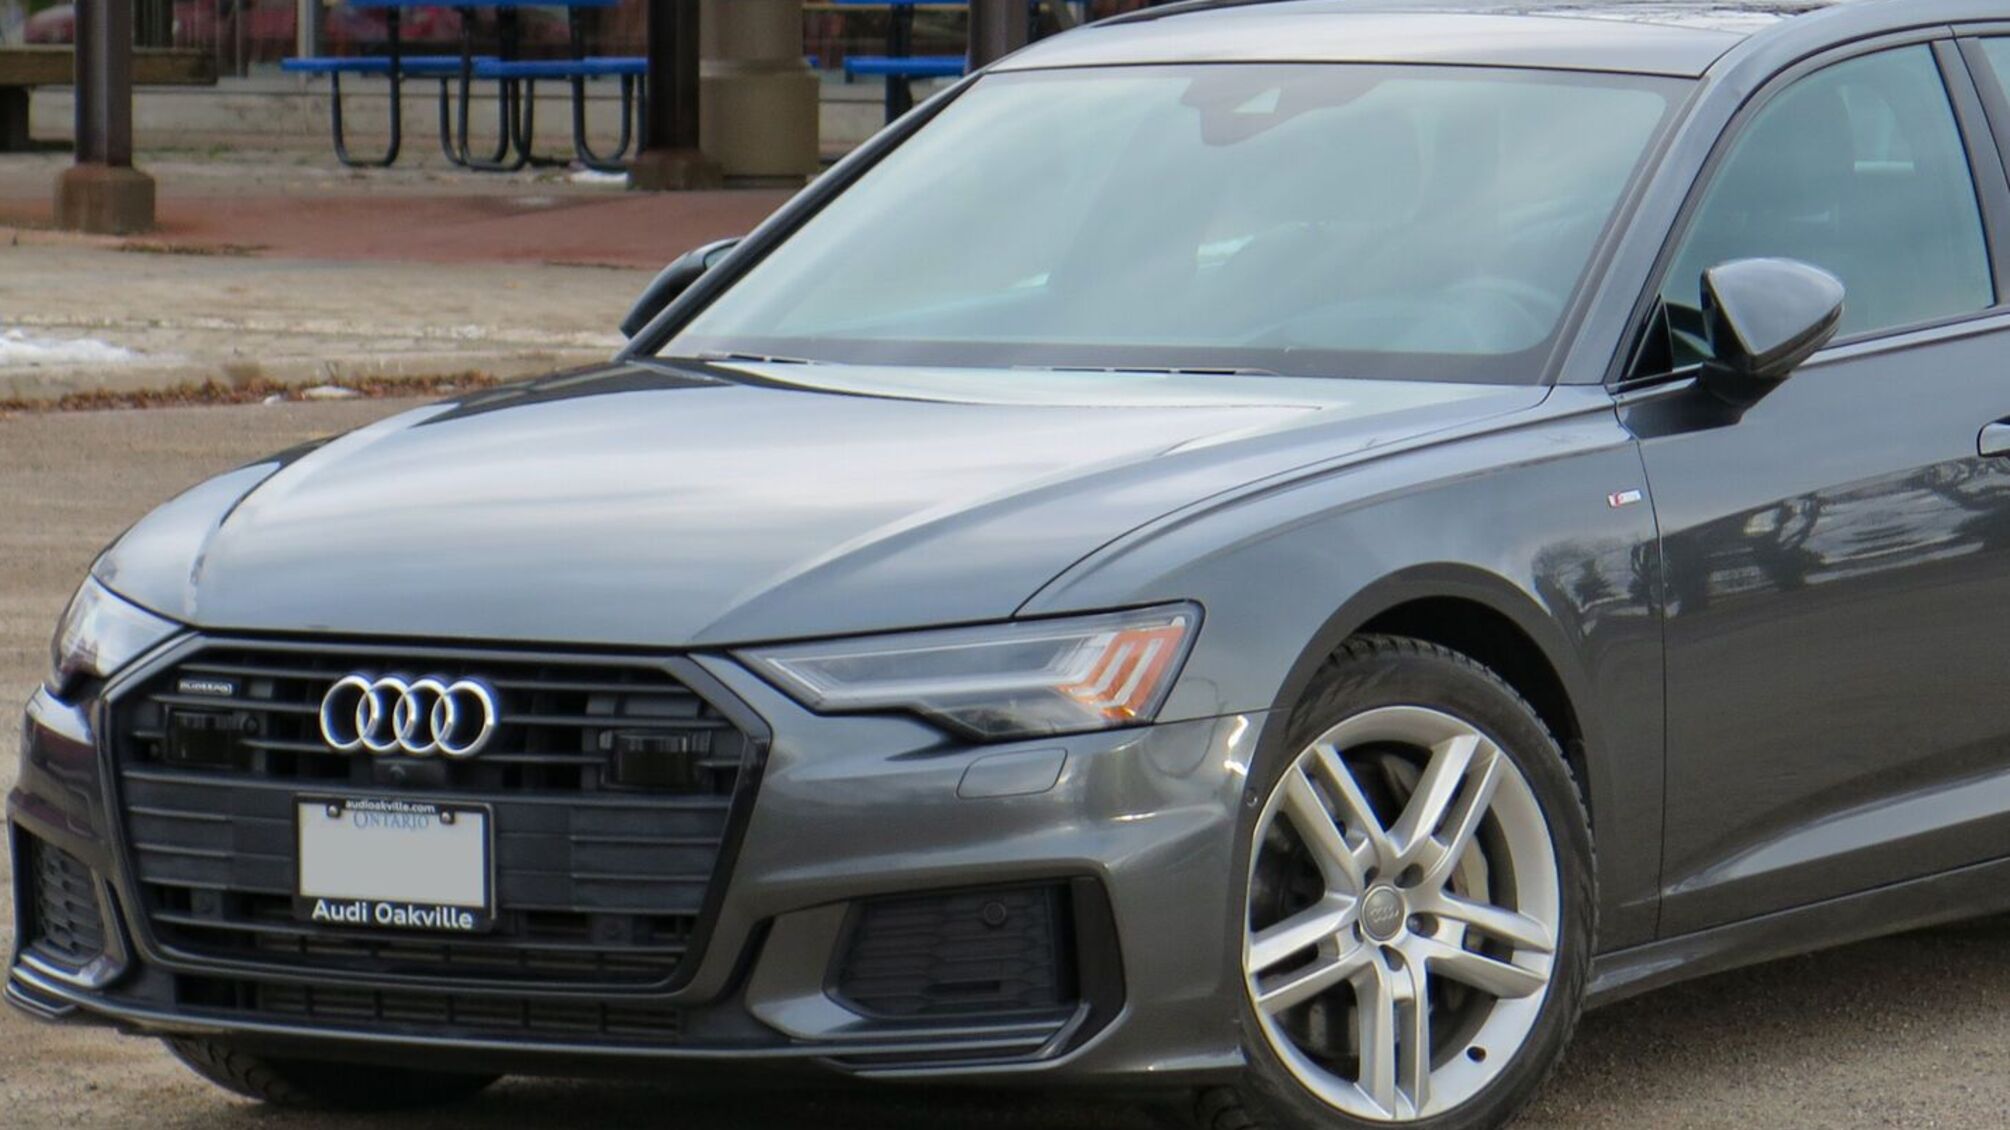 У жителя Львівщини поліція конфіскувала автомобіль Audi А6: названо причину